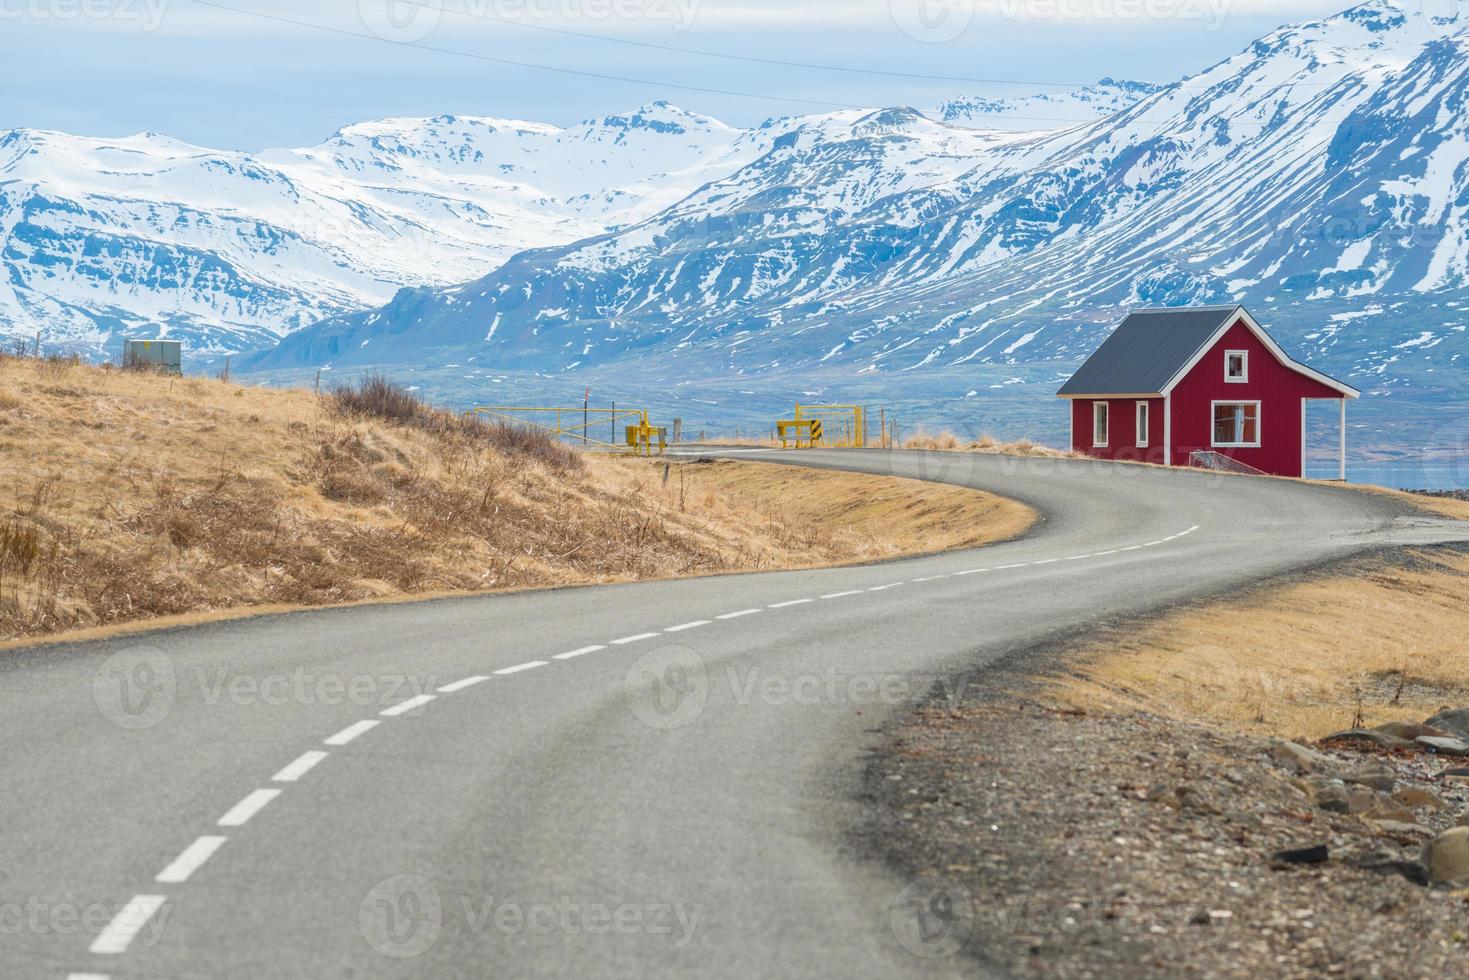 un piccolo cottage rosso situato nel fiordo orientale dell'Islanda con la strada di campagna una parte della circonvallazione principale passava questa regione orientale del paese. foto